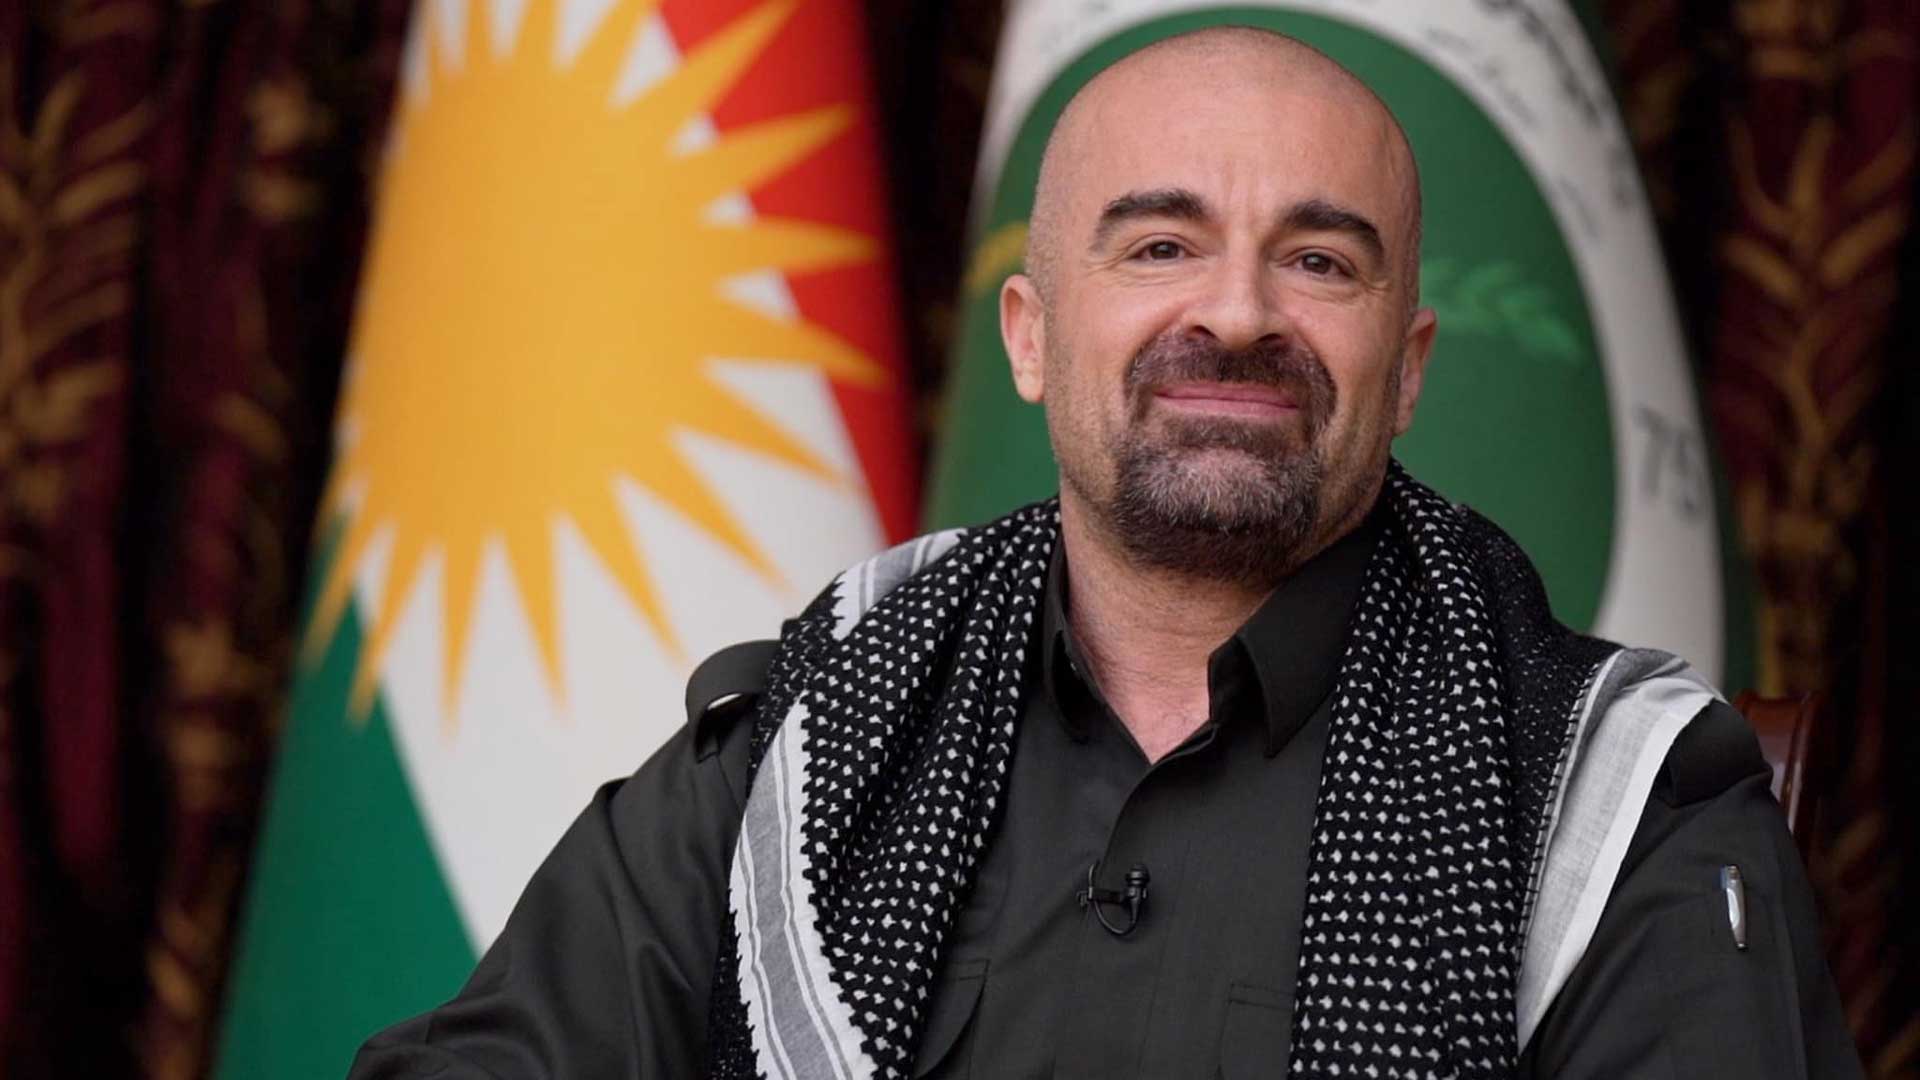  الرئيس بافل يهنئ شعب كوردستان بحلول عيد نوروز